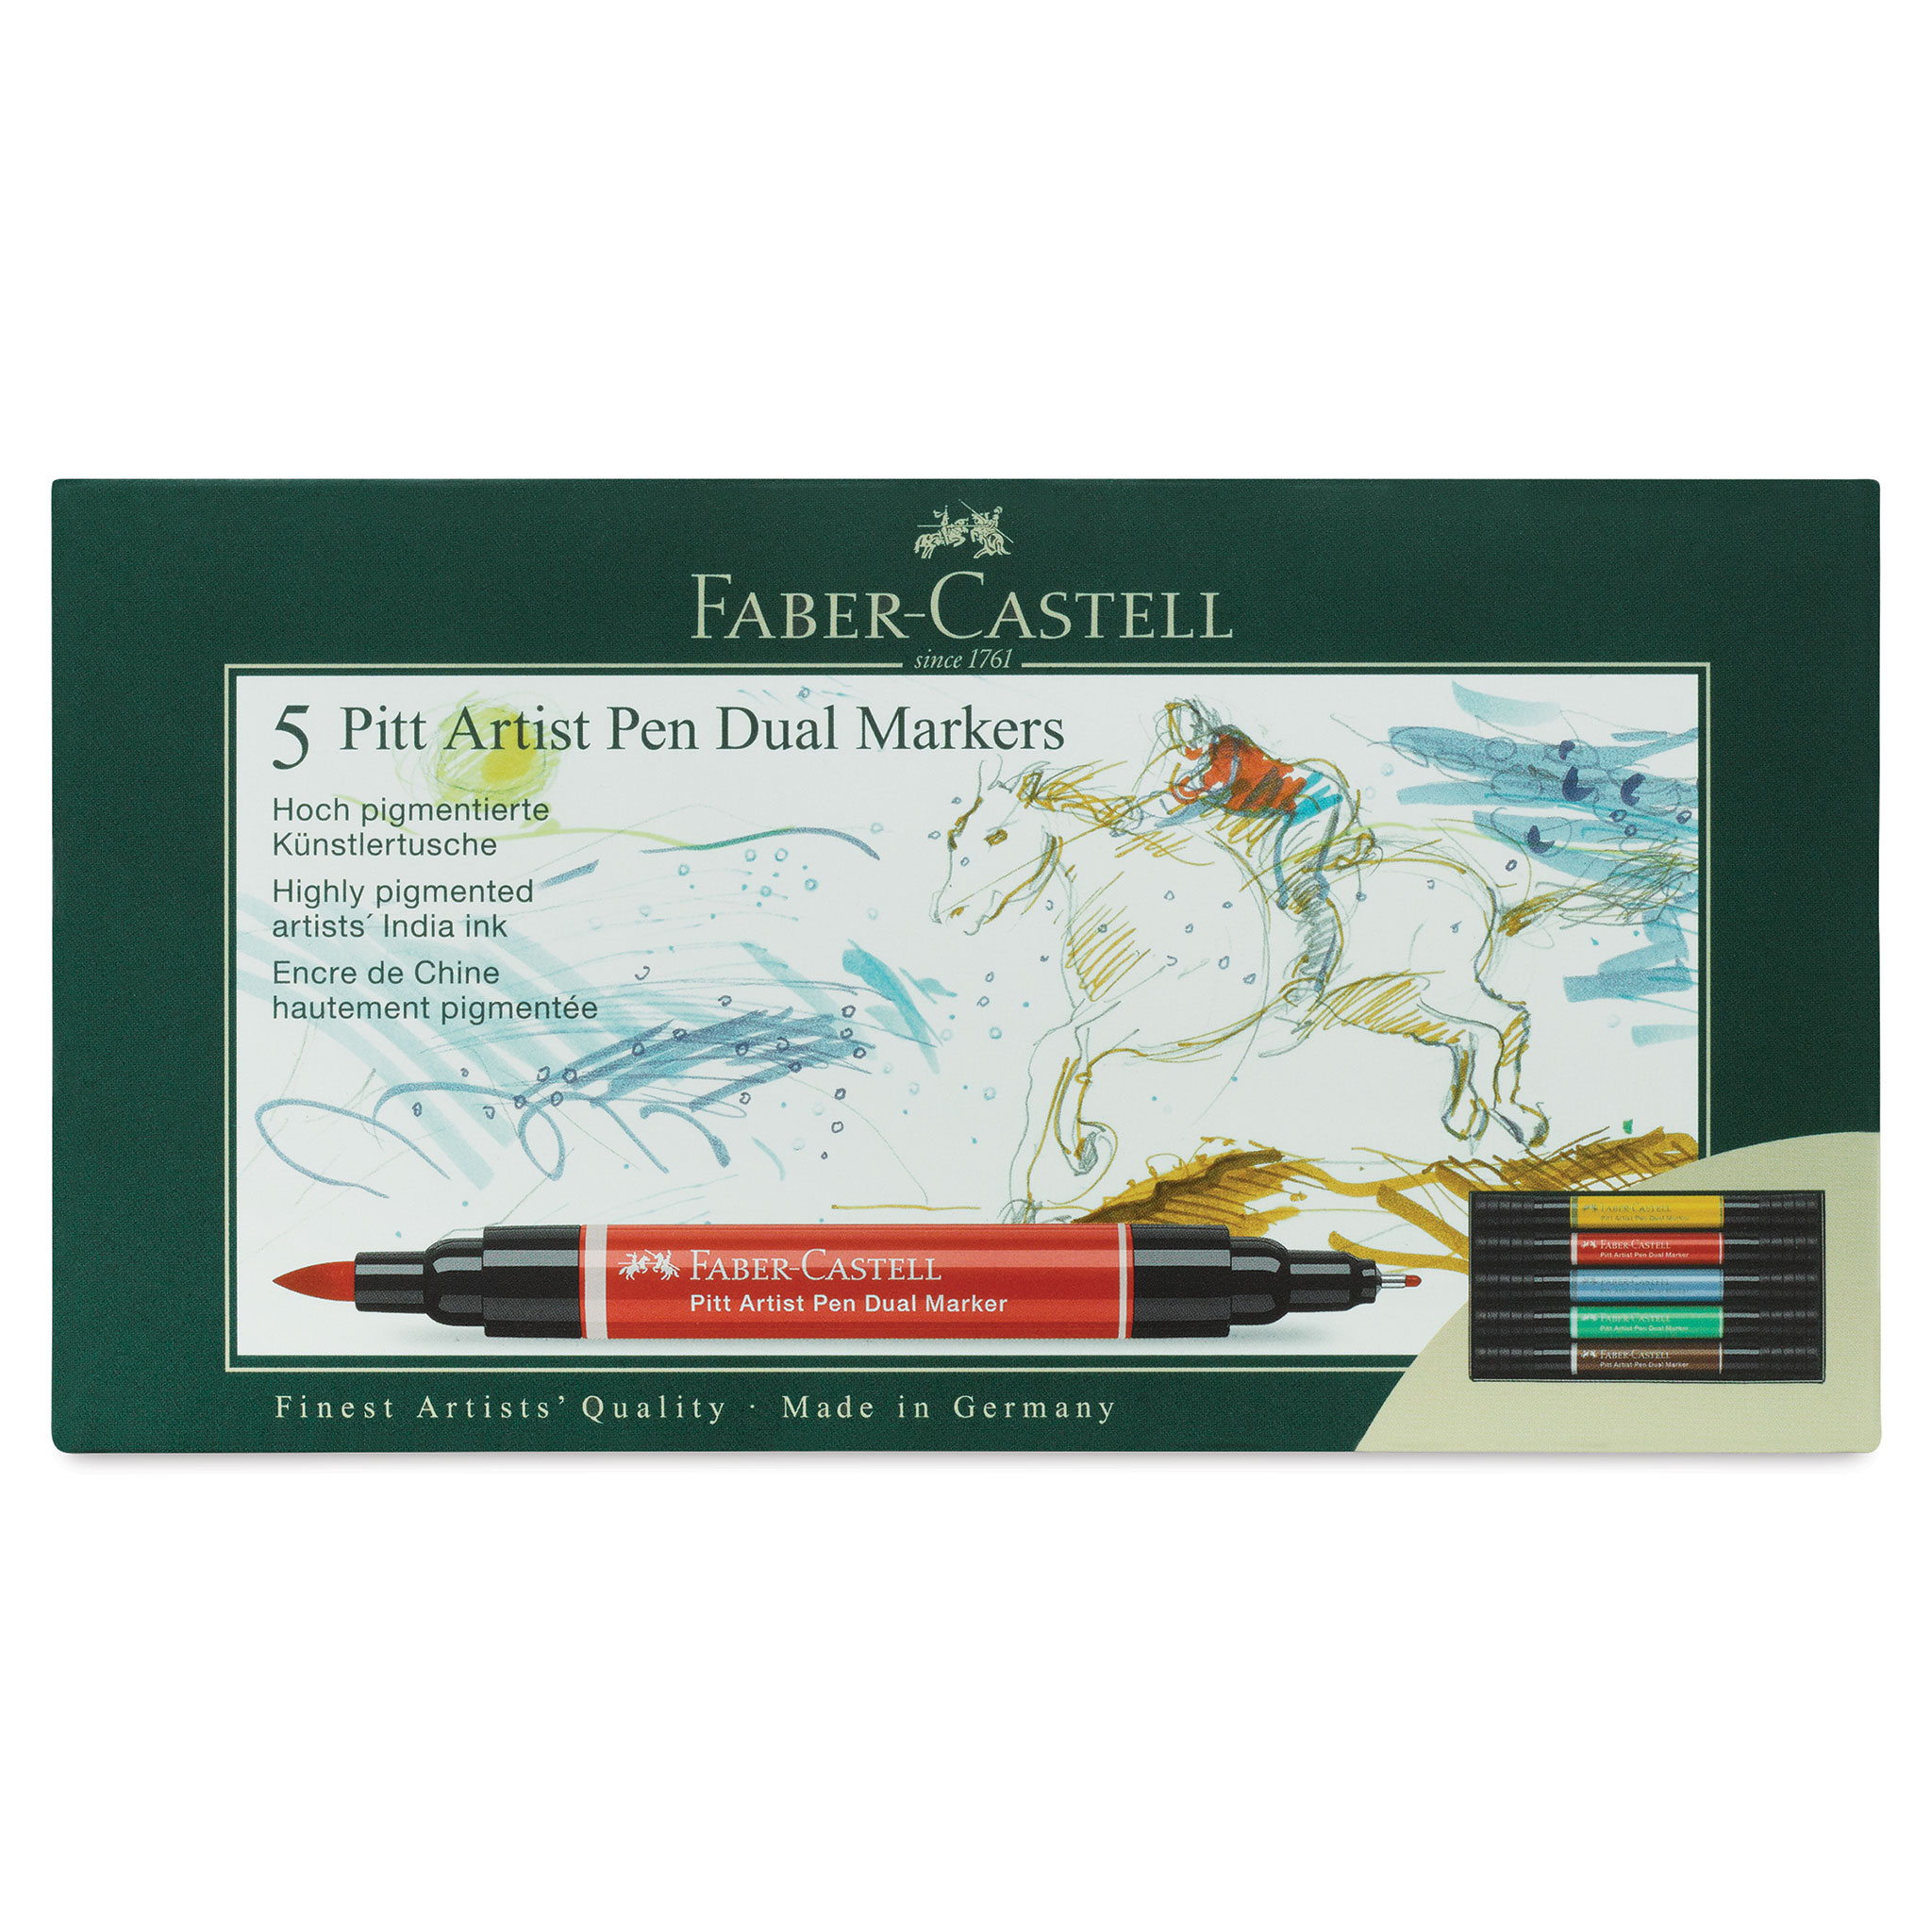 Faber-Castell Pitt Artist Lettering Pen Sets